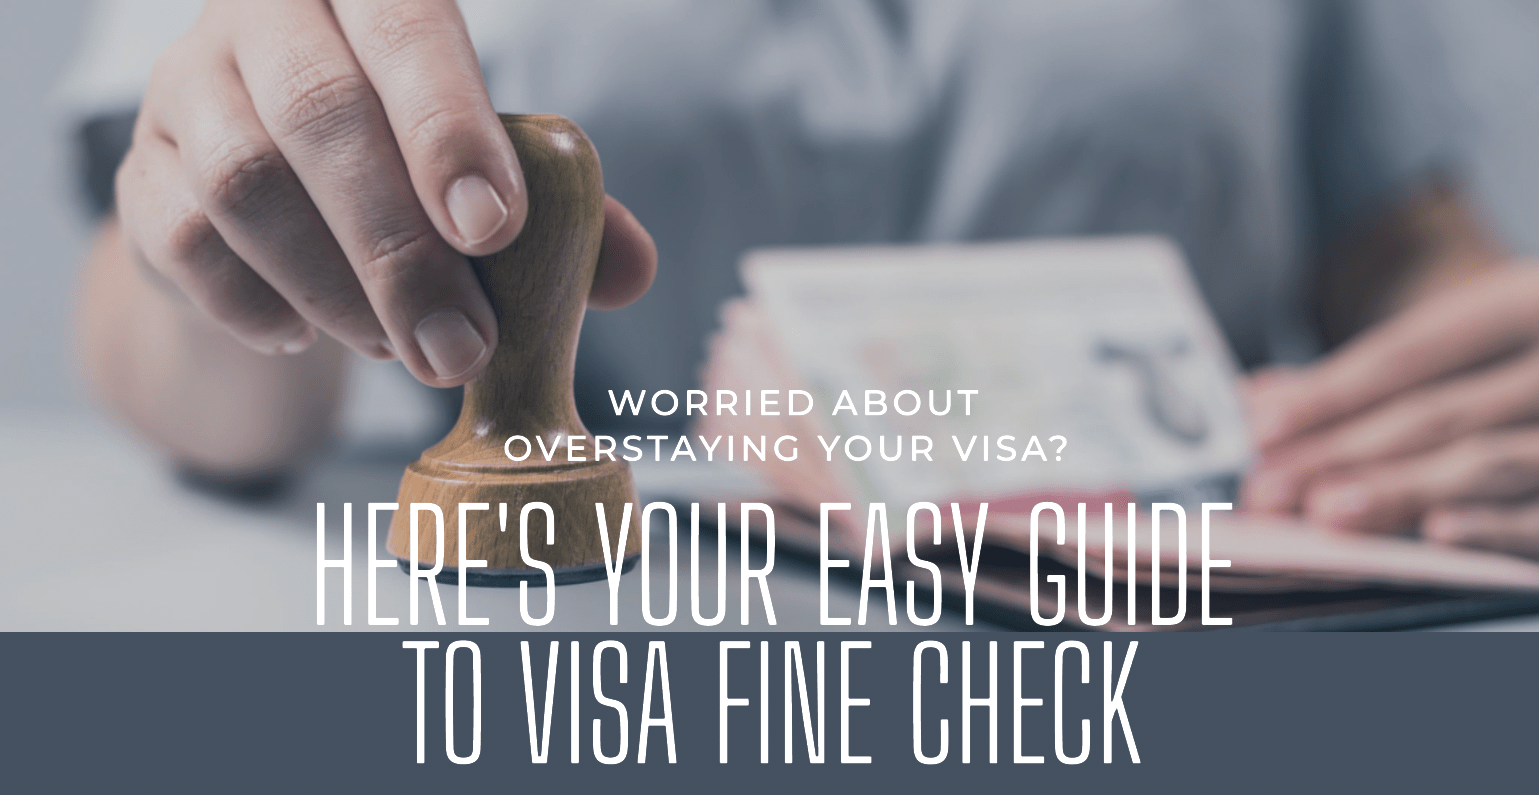 How to do a Visa Fine Check?